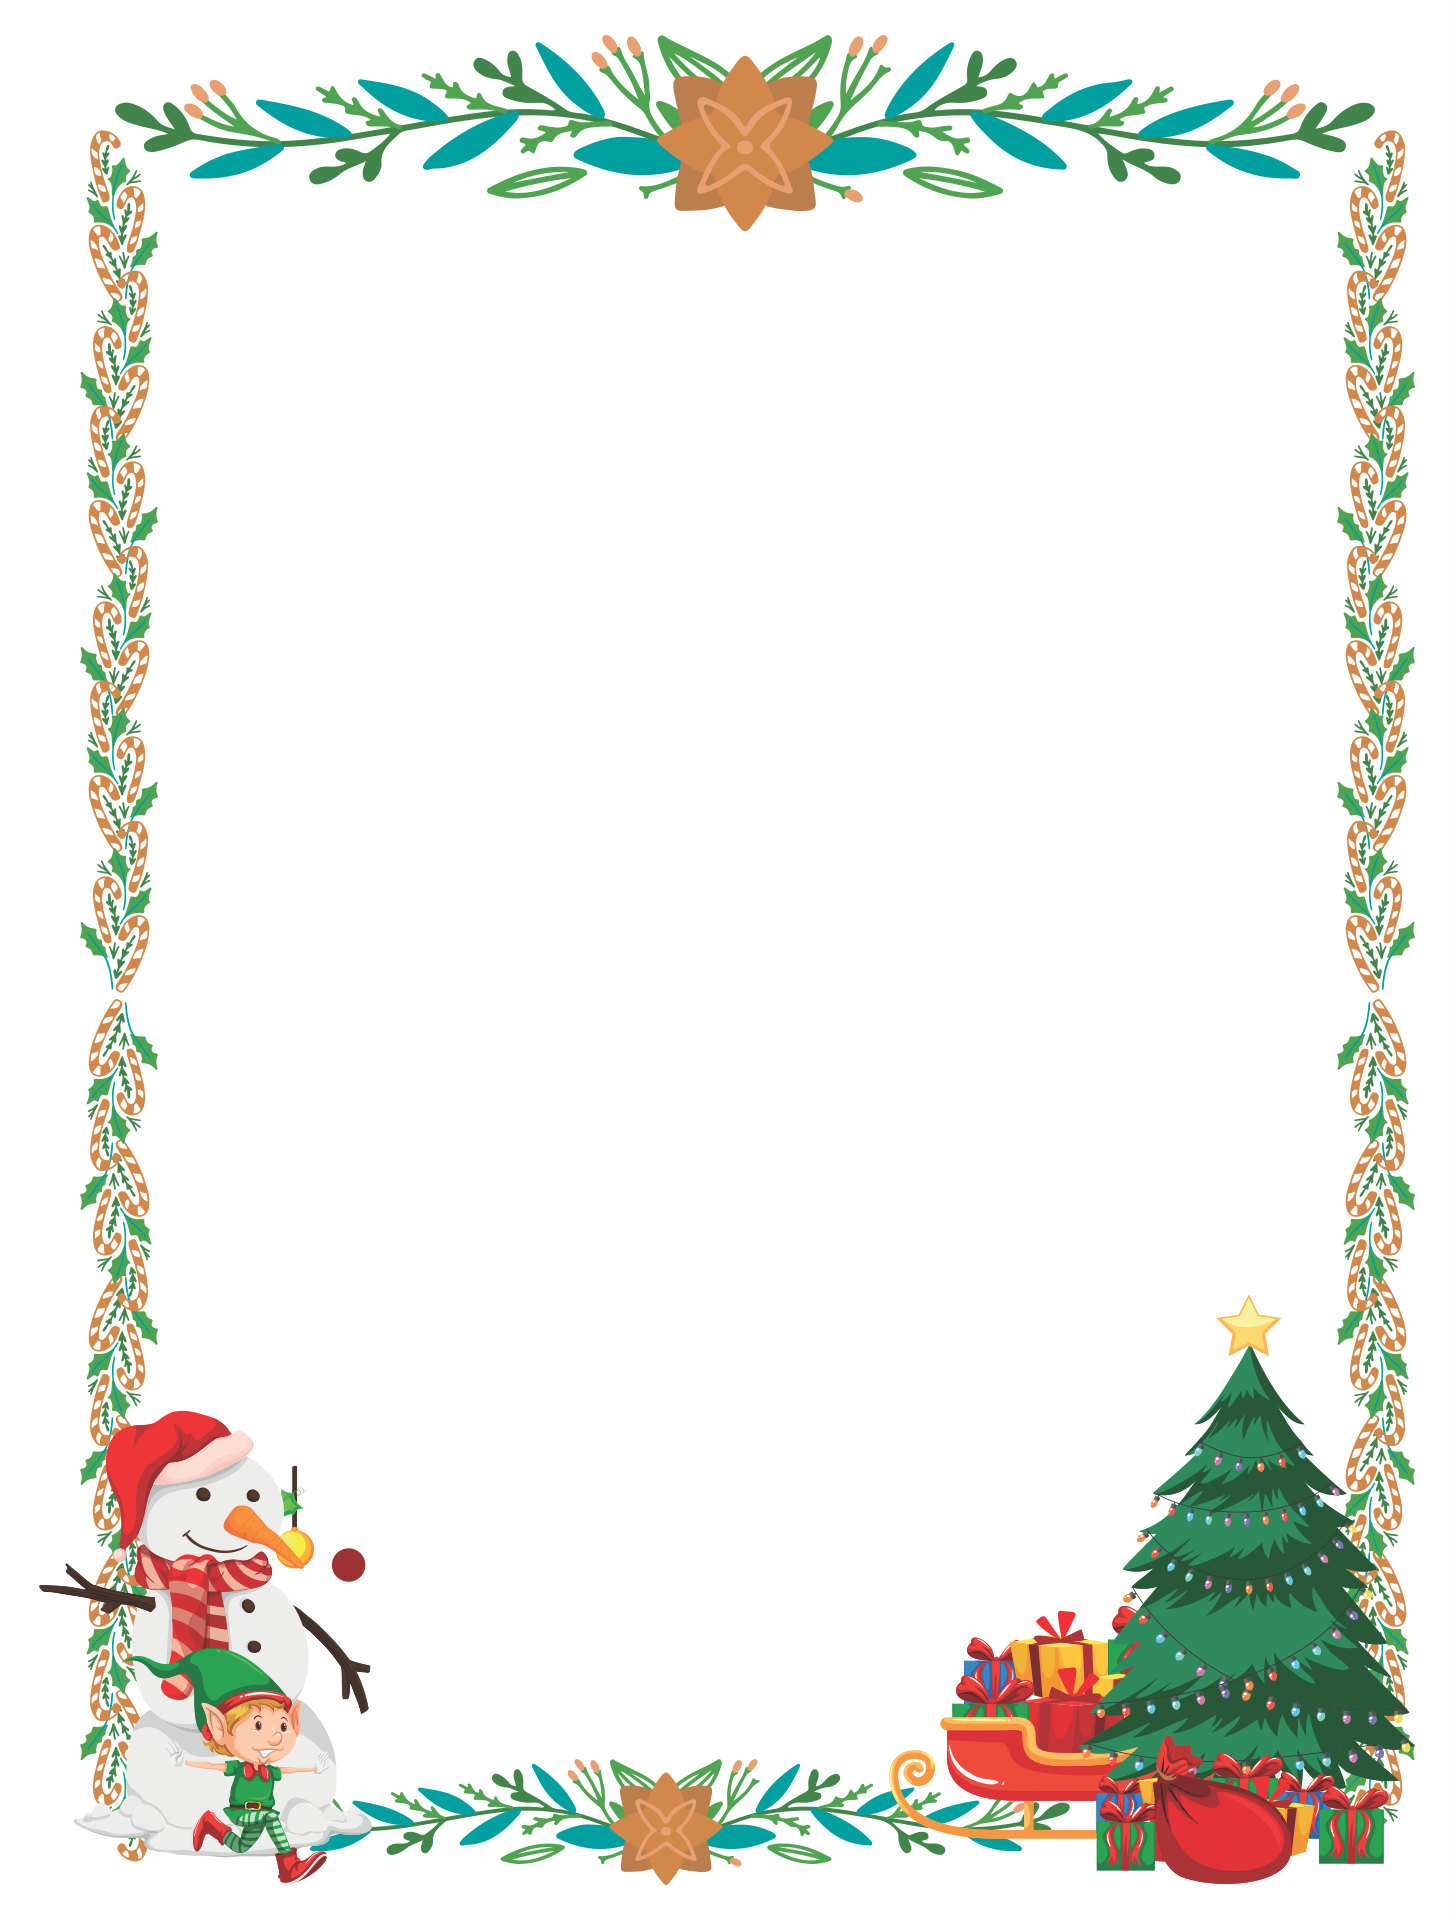 Free Printable Christmas Borders And Backgrounds Printable Templates